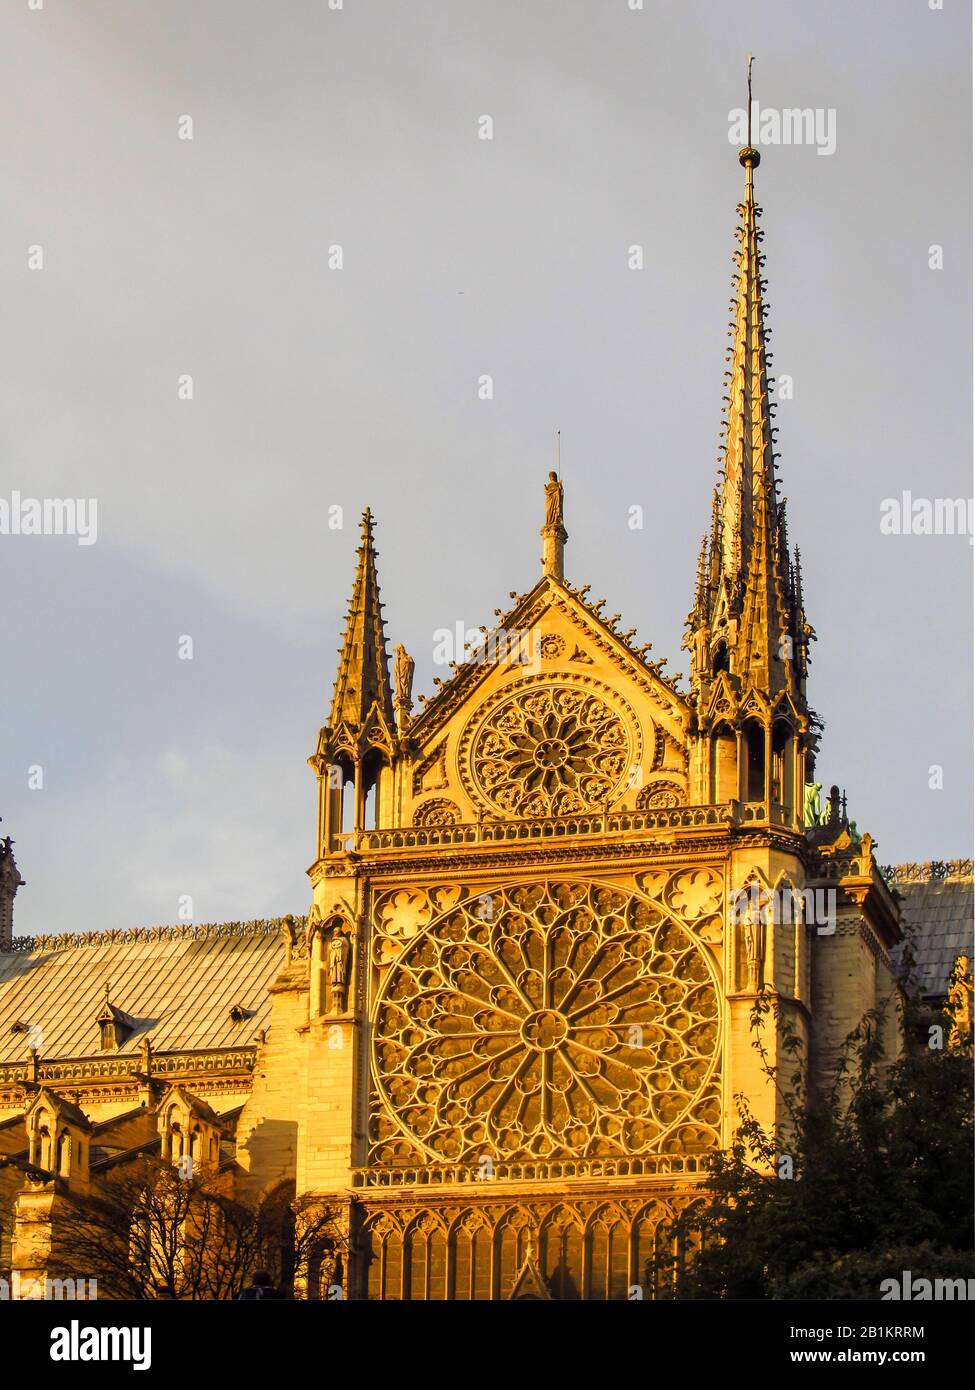 La finestra rosa meridionale di Notre Dame, Parigi, Francia, nel tardo pomeriggio visto dall'esterno della Cattedrale Foto Stock